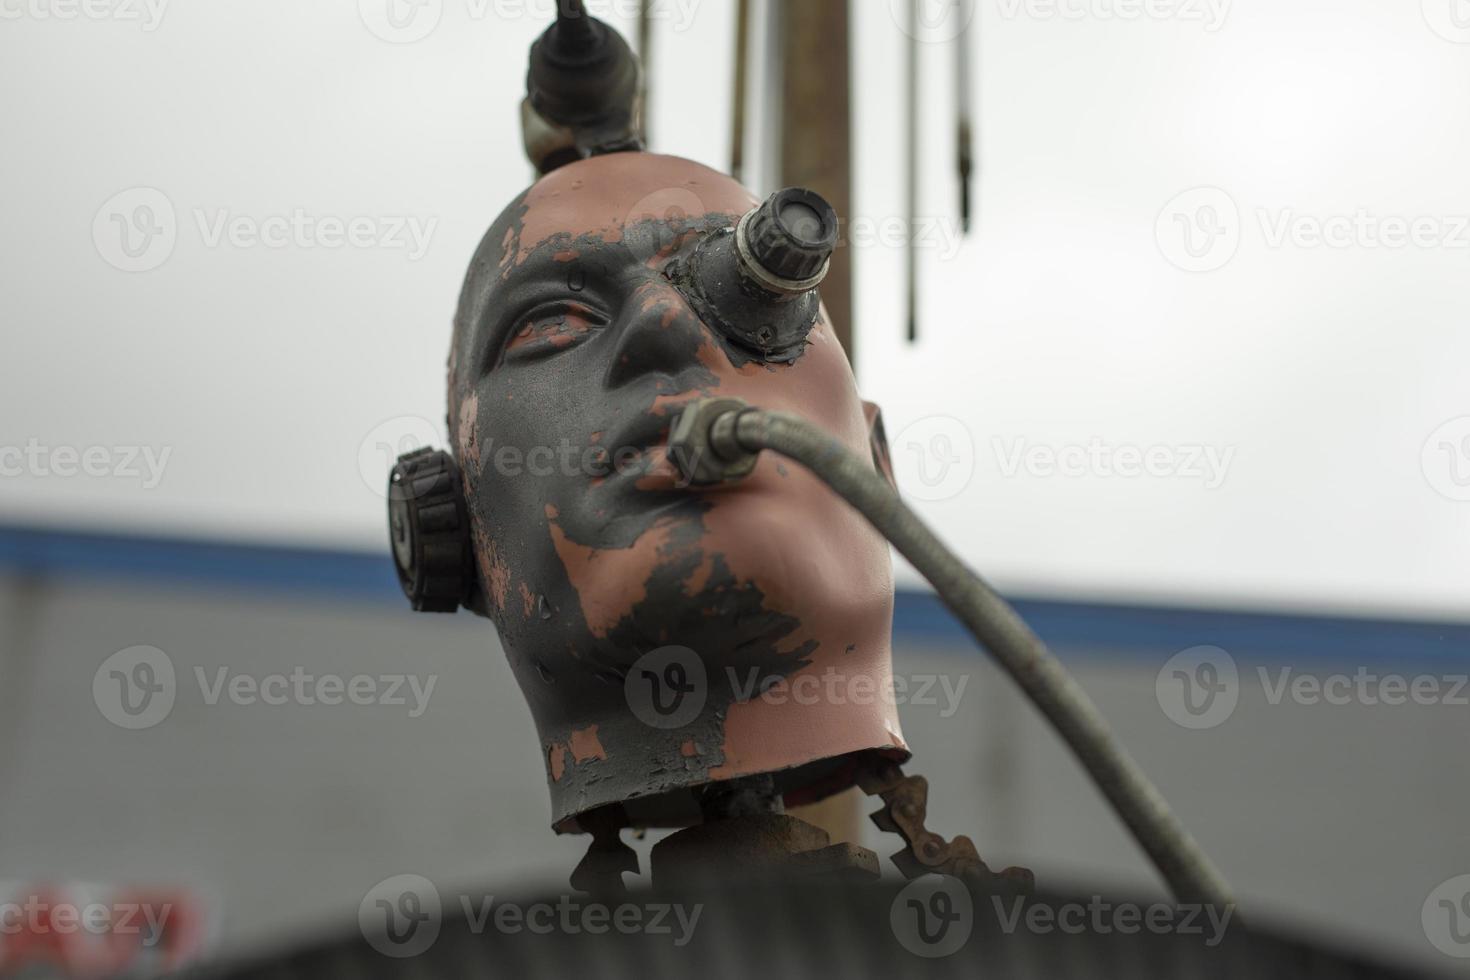 cabeza de maniquí al estilo de steam punk. detalles integrados en la cabeza. escultura en el festival. foto